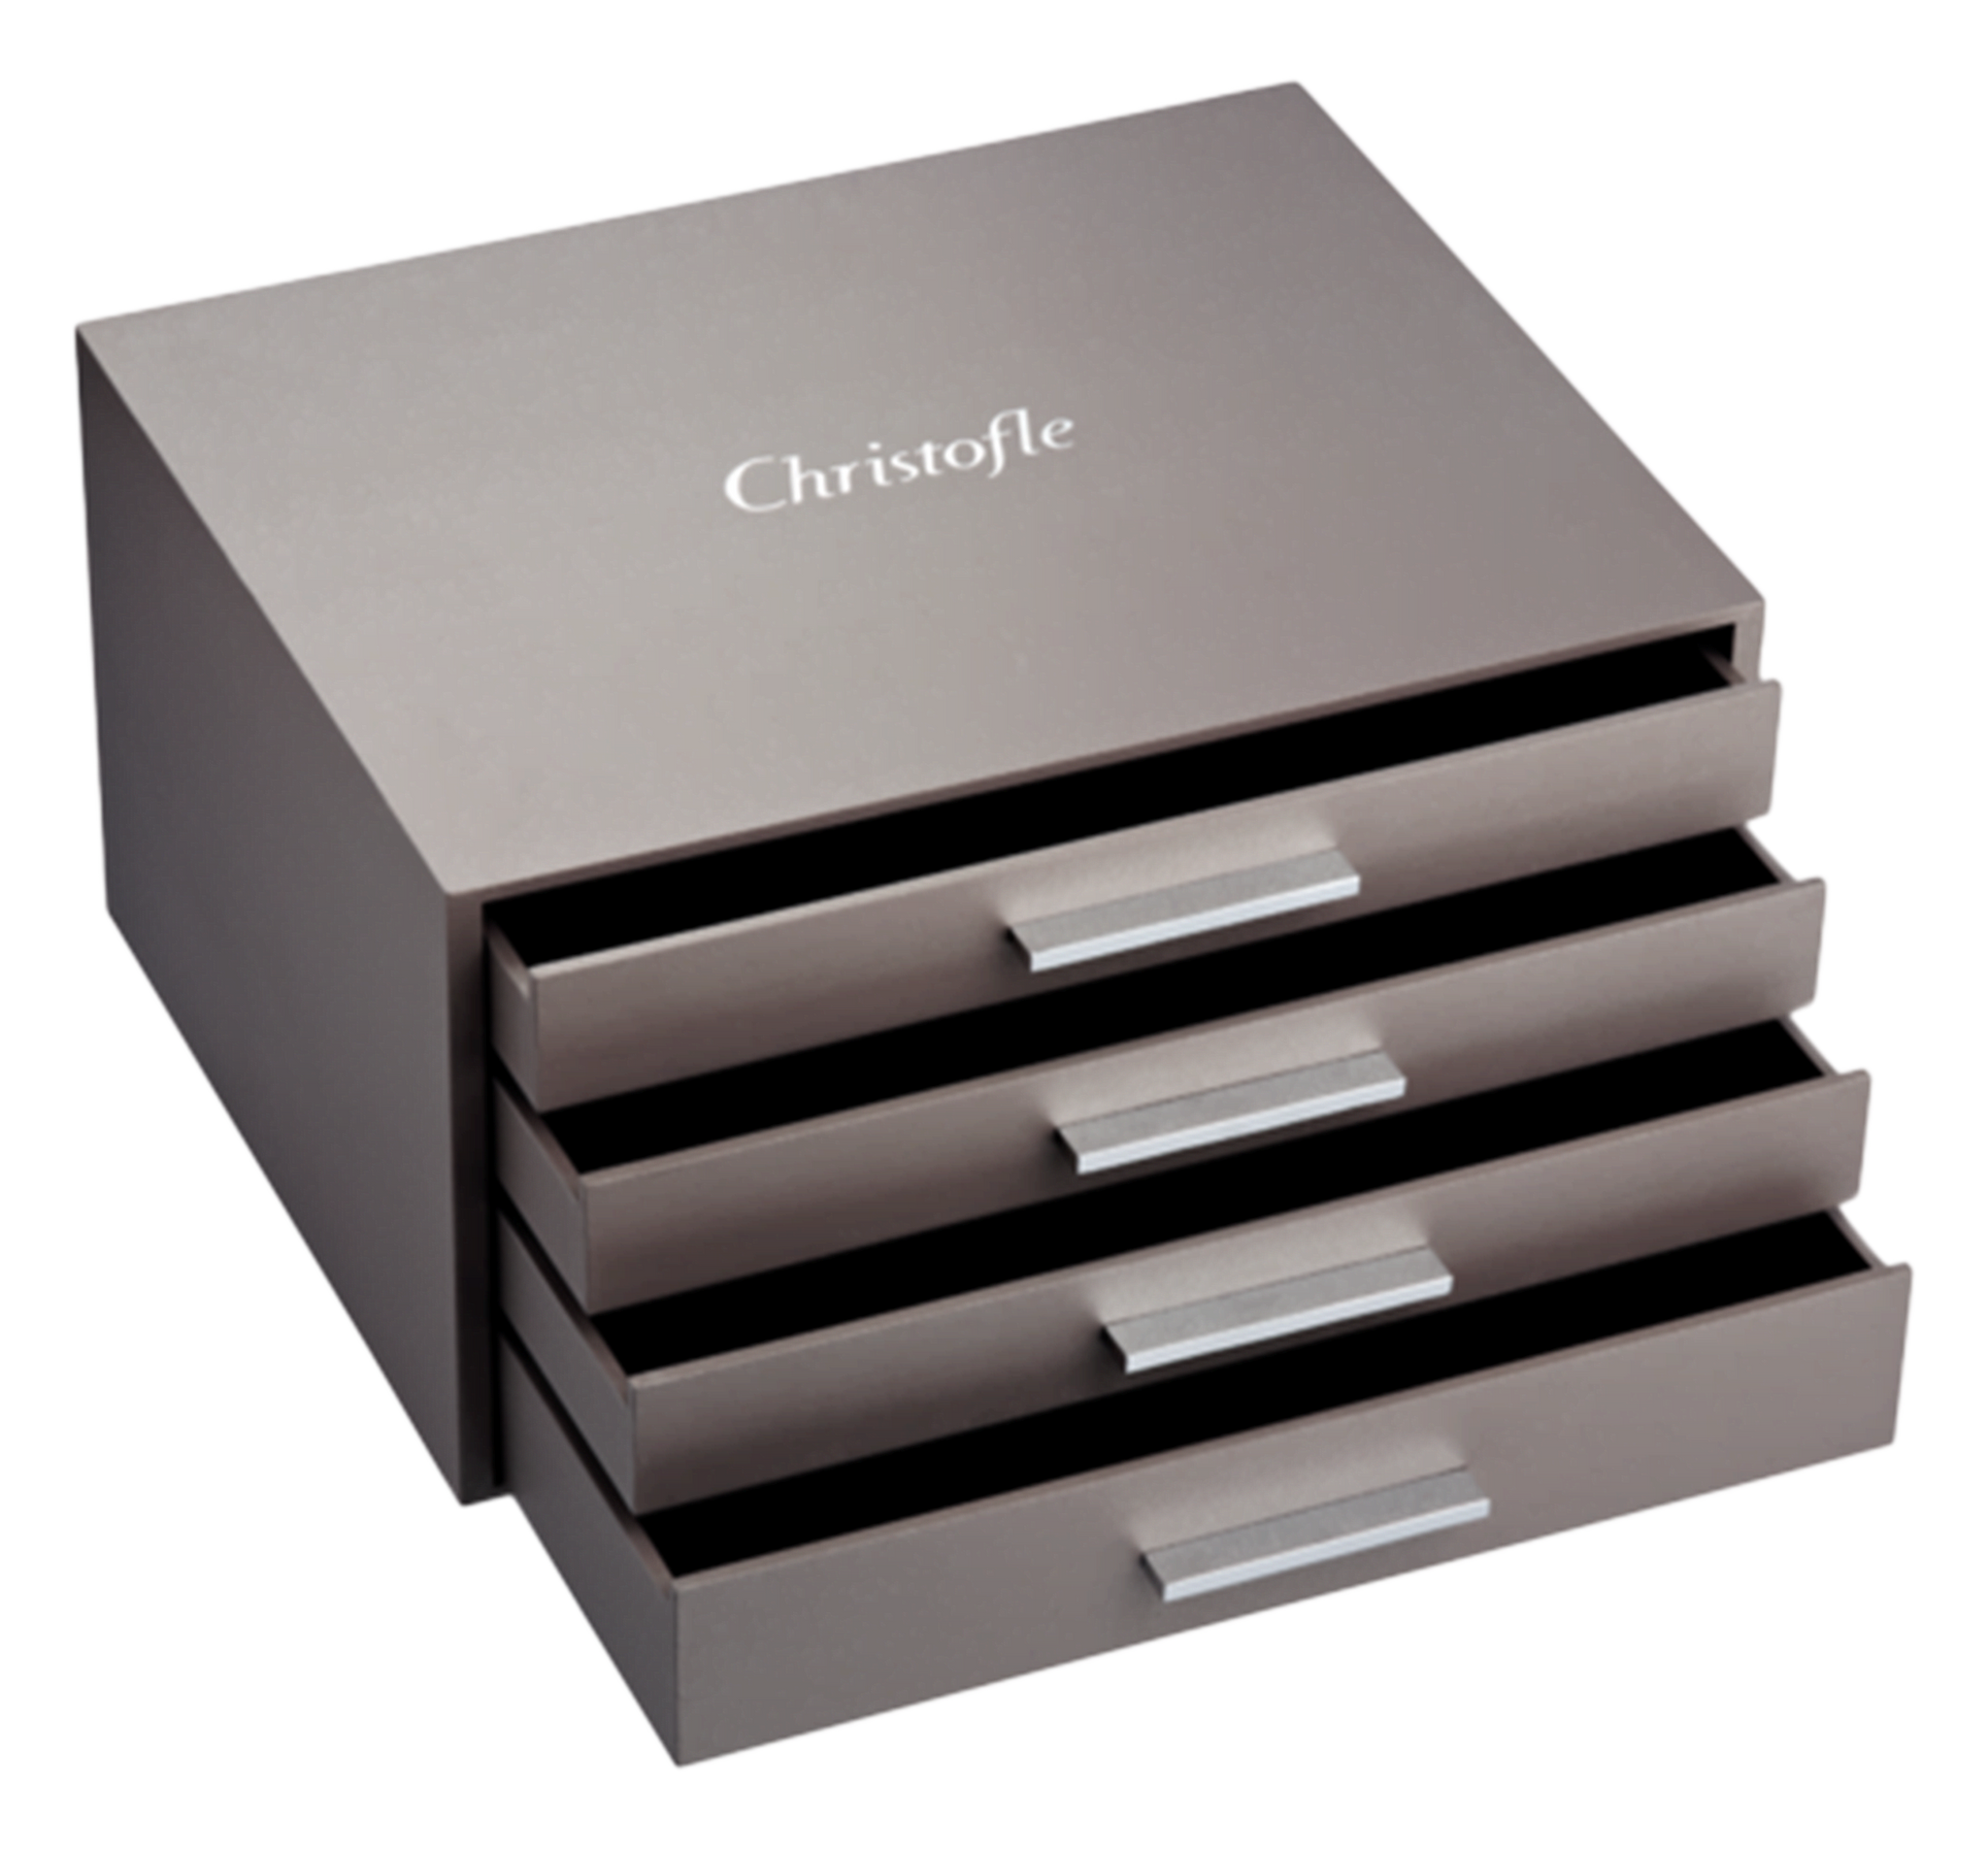 Christofle 4 Drawer Flatware Storage Chest